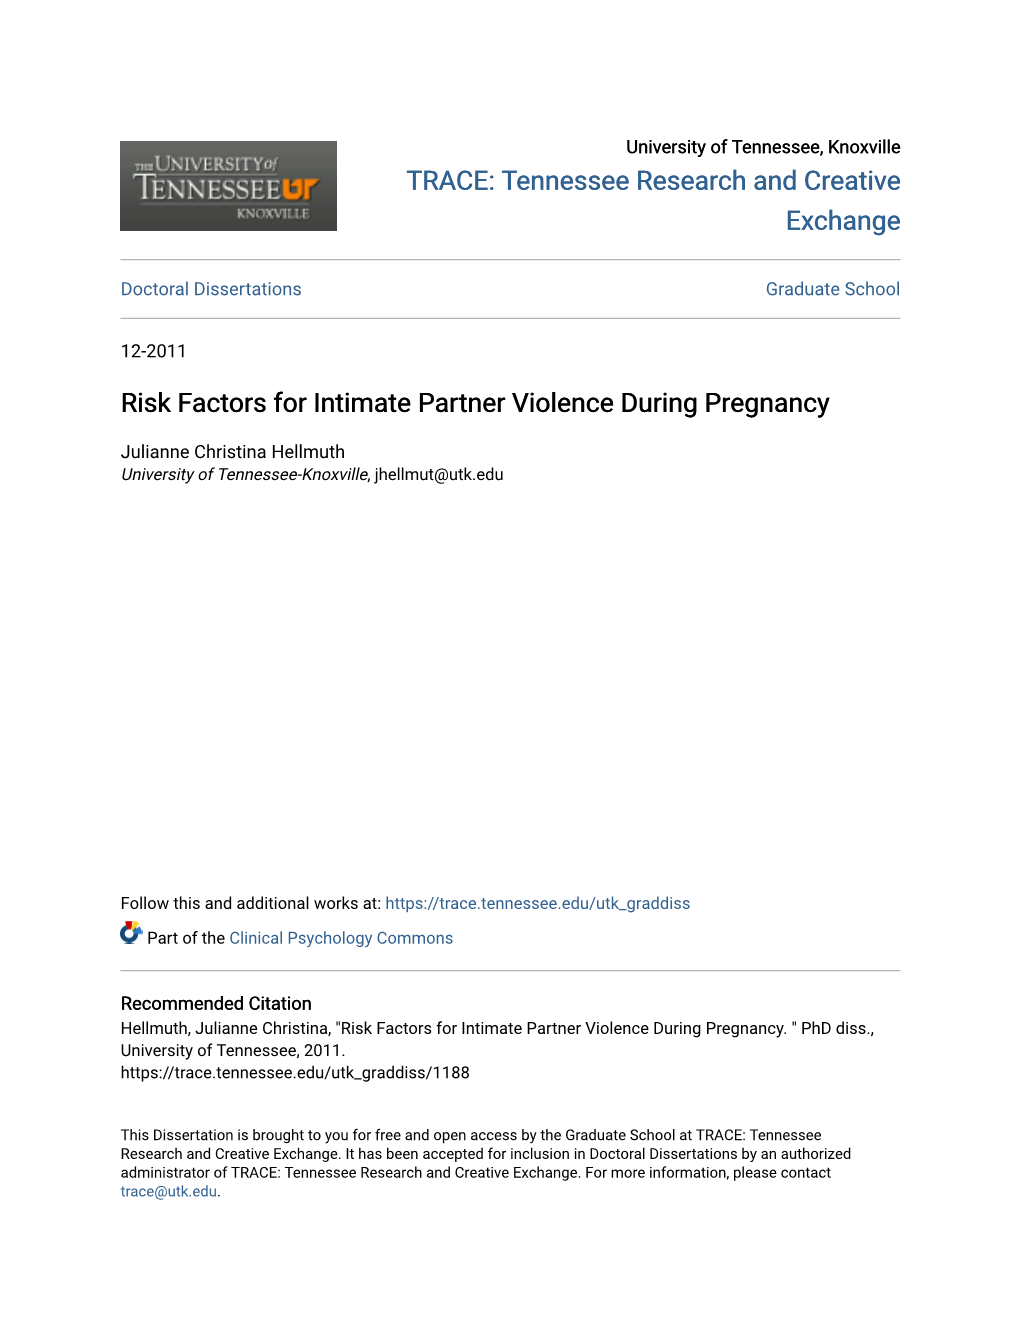 Risk Factors for Intimate Partner Violence During Pregnancy